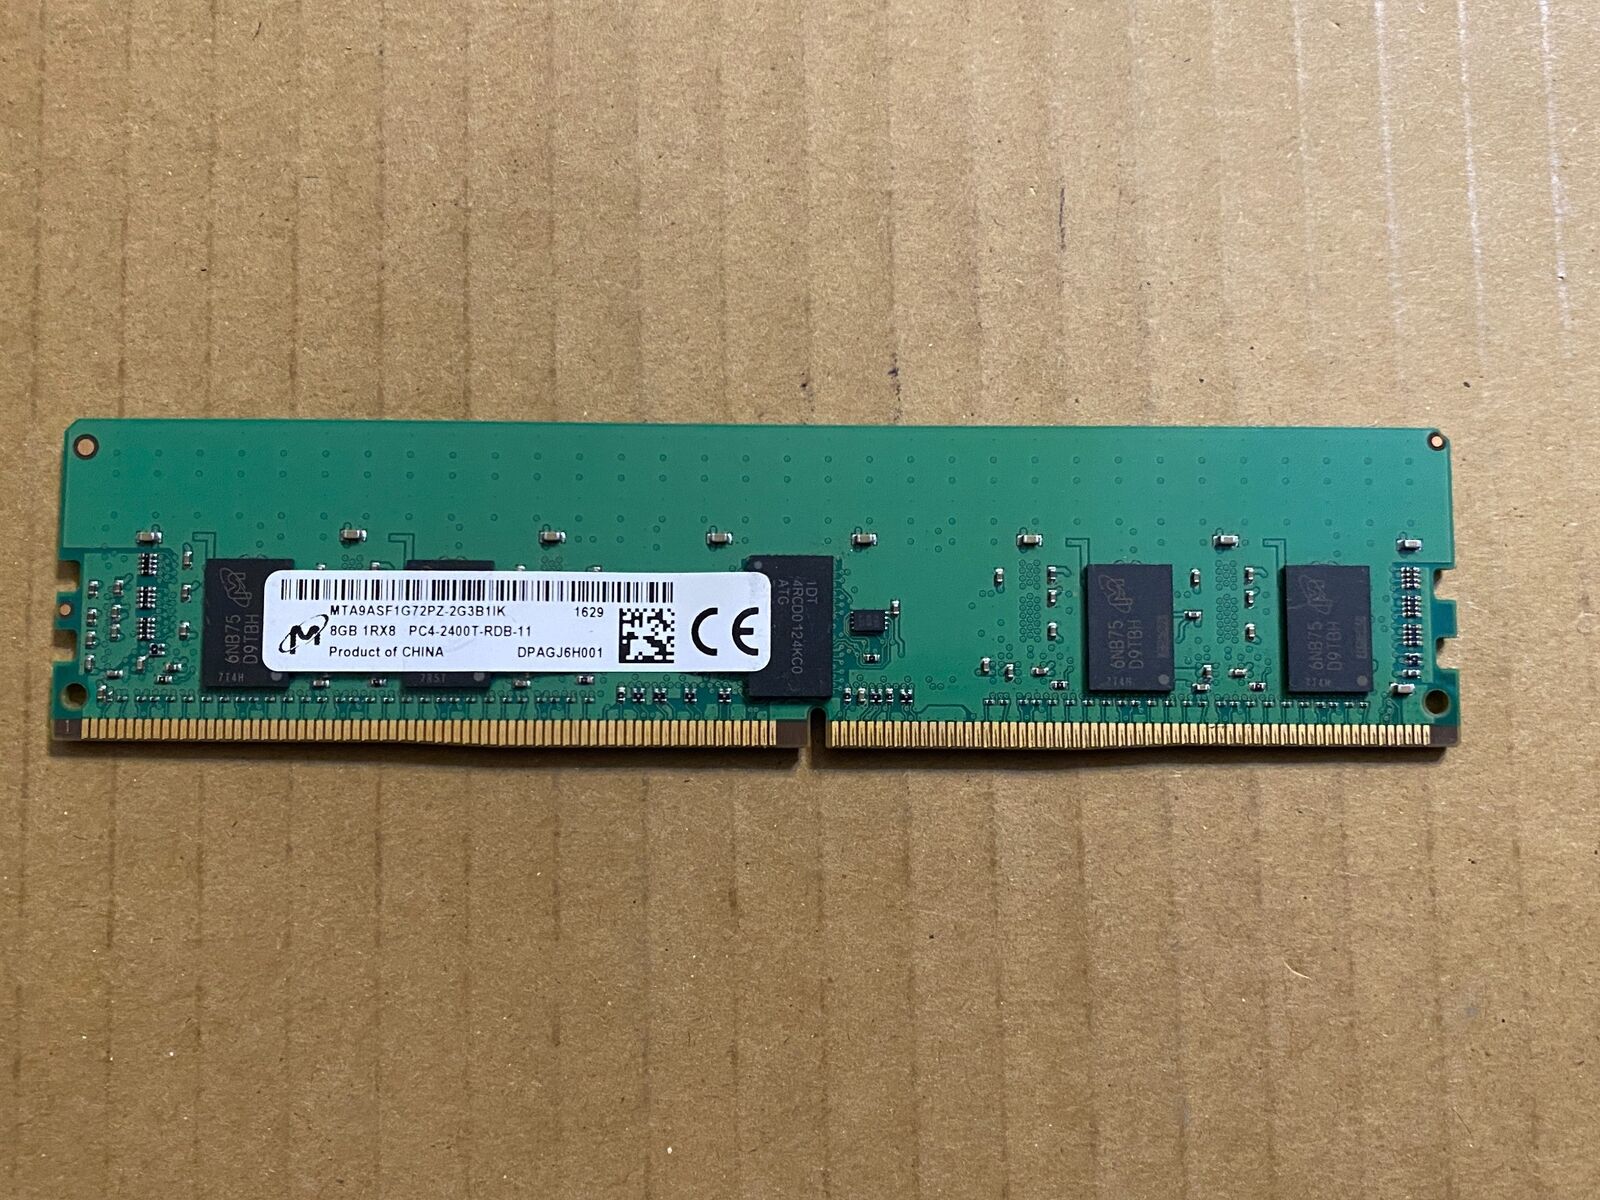 MICRON MTA9ASF1G72PZ-2G3B1IK 8GB DDR4-2400T PC4-19200T 1RX8 M2-2(6)